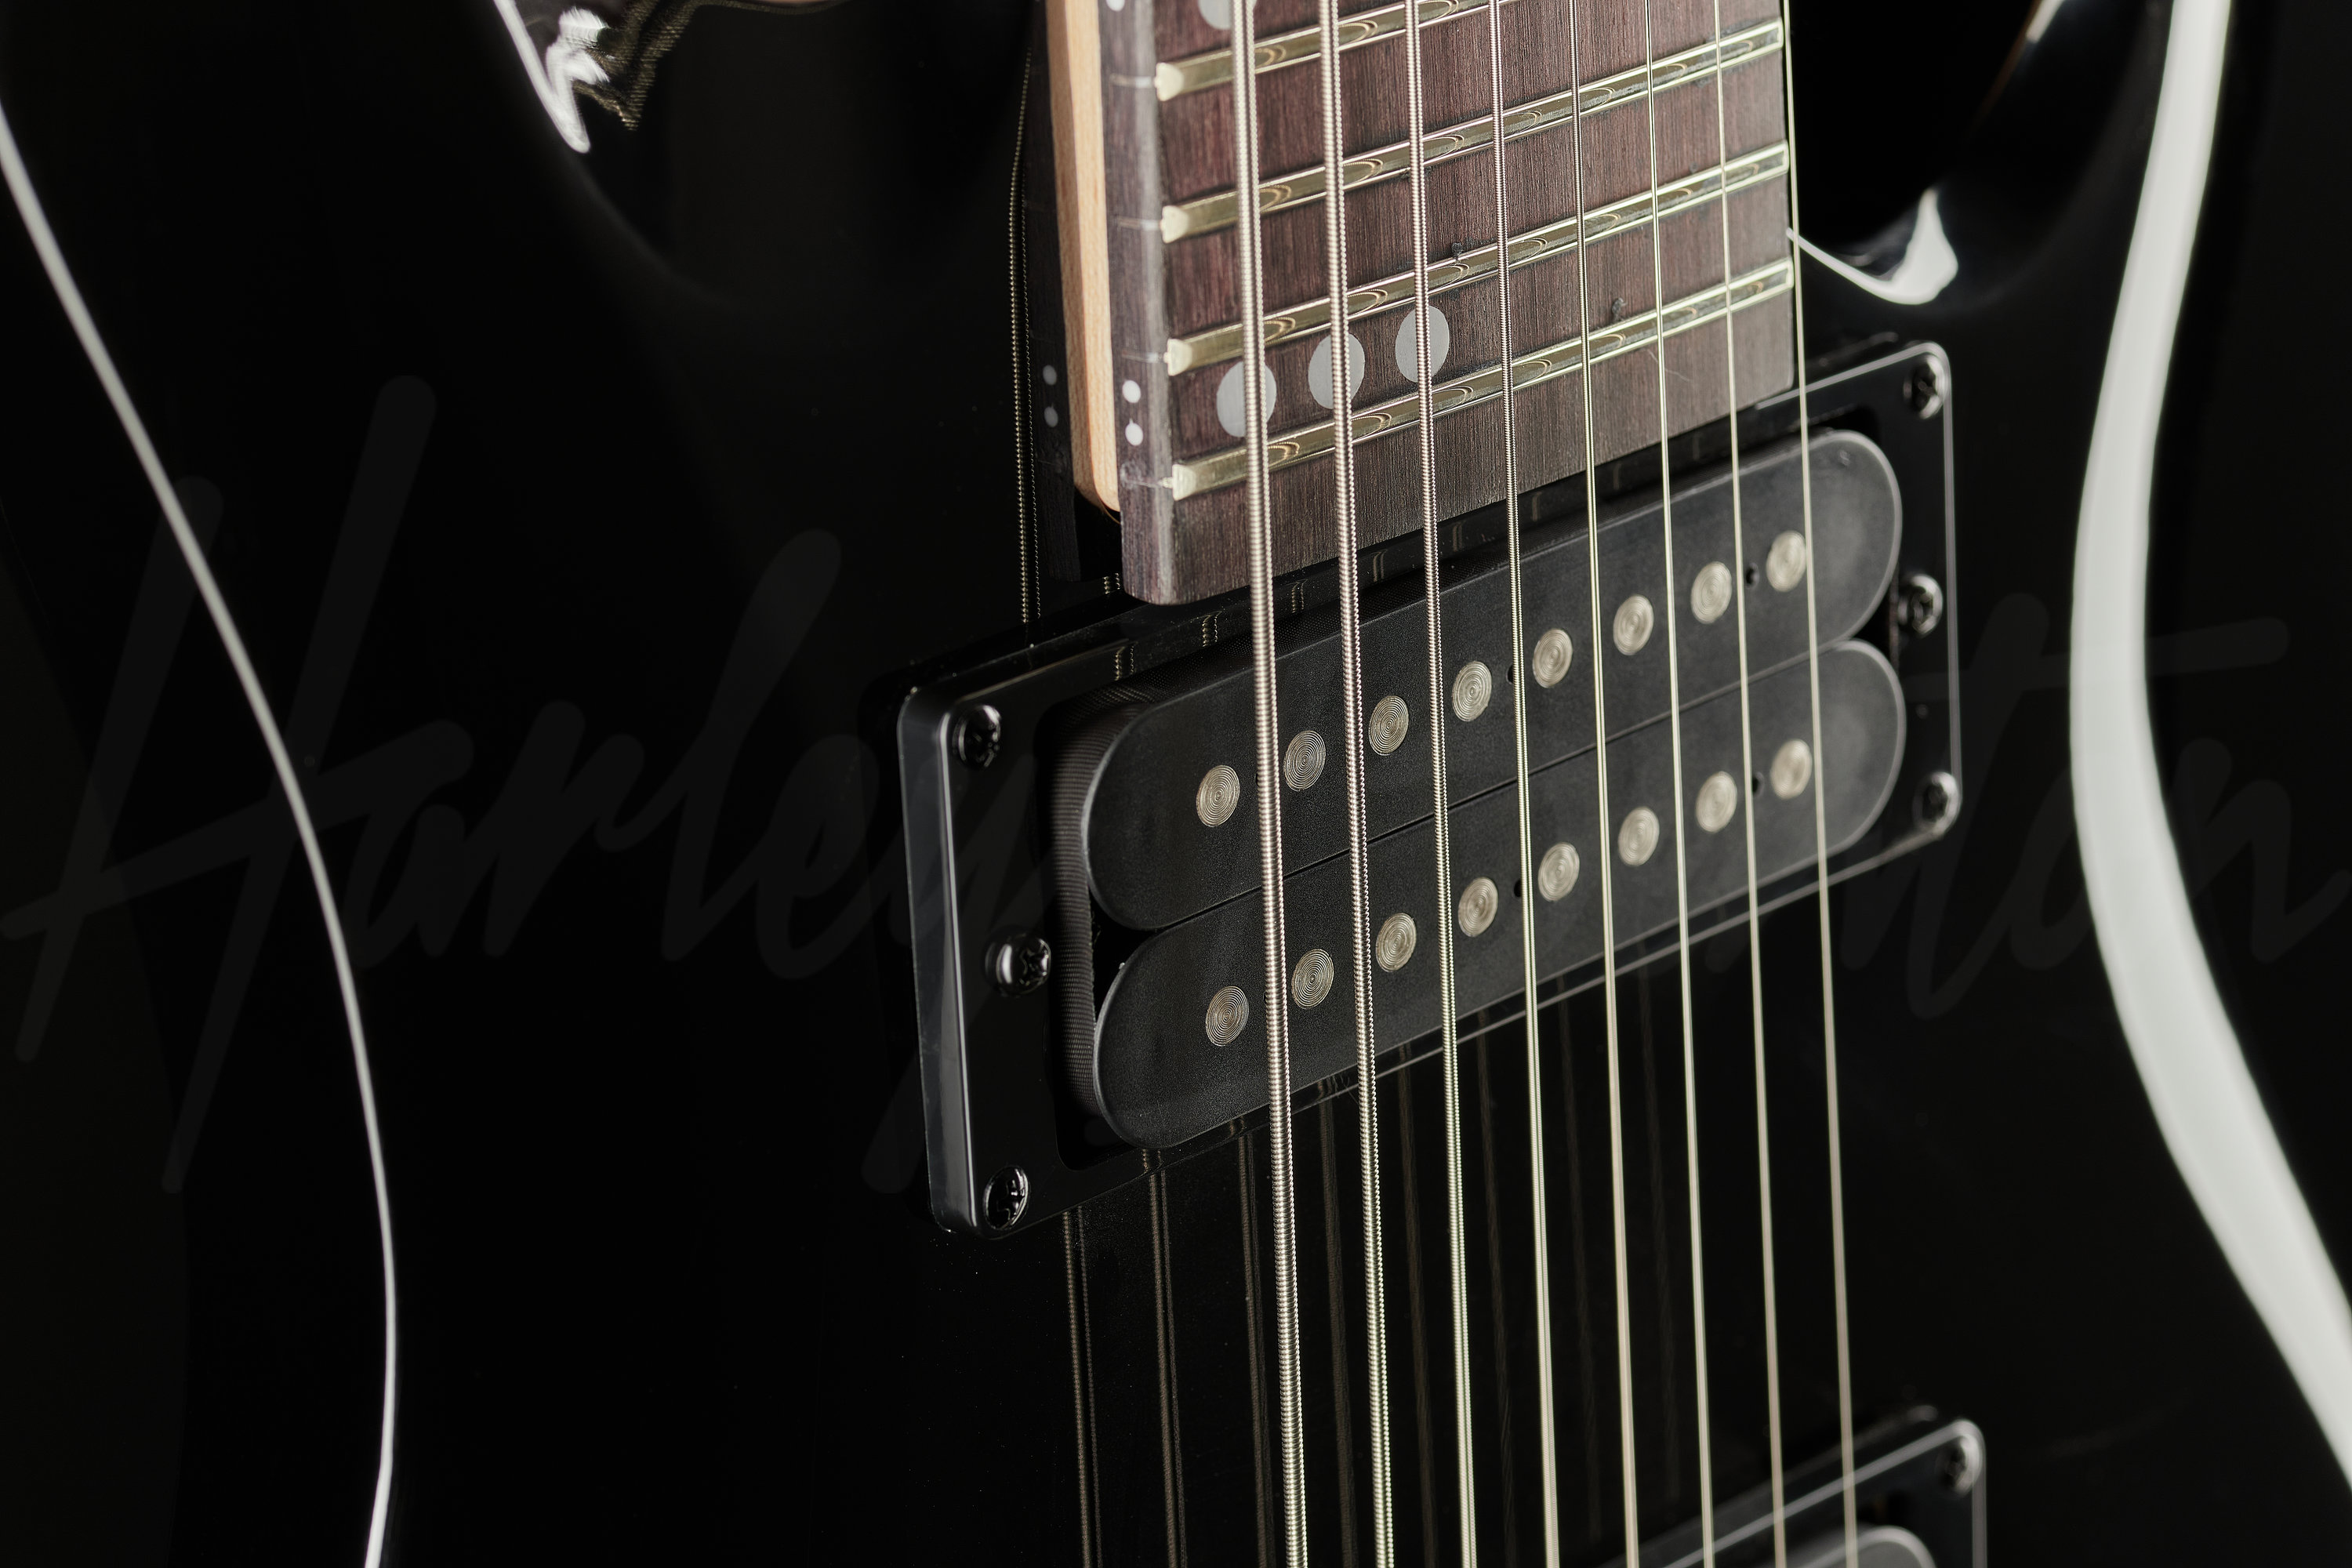 Guitarra elétrica Harley Benton Progressive Series R-458 FanFret de tília  2018 black high-gloss brilhante com diapasão de amaranto